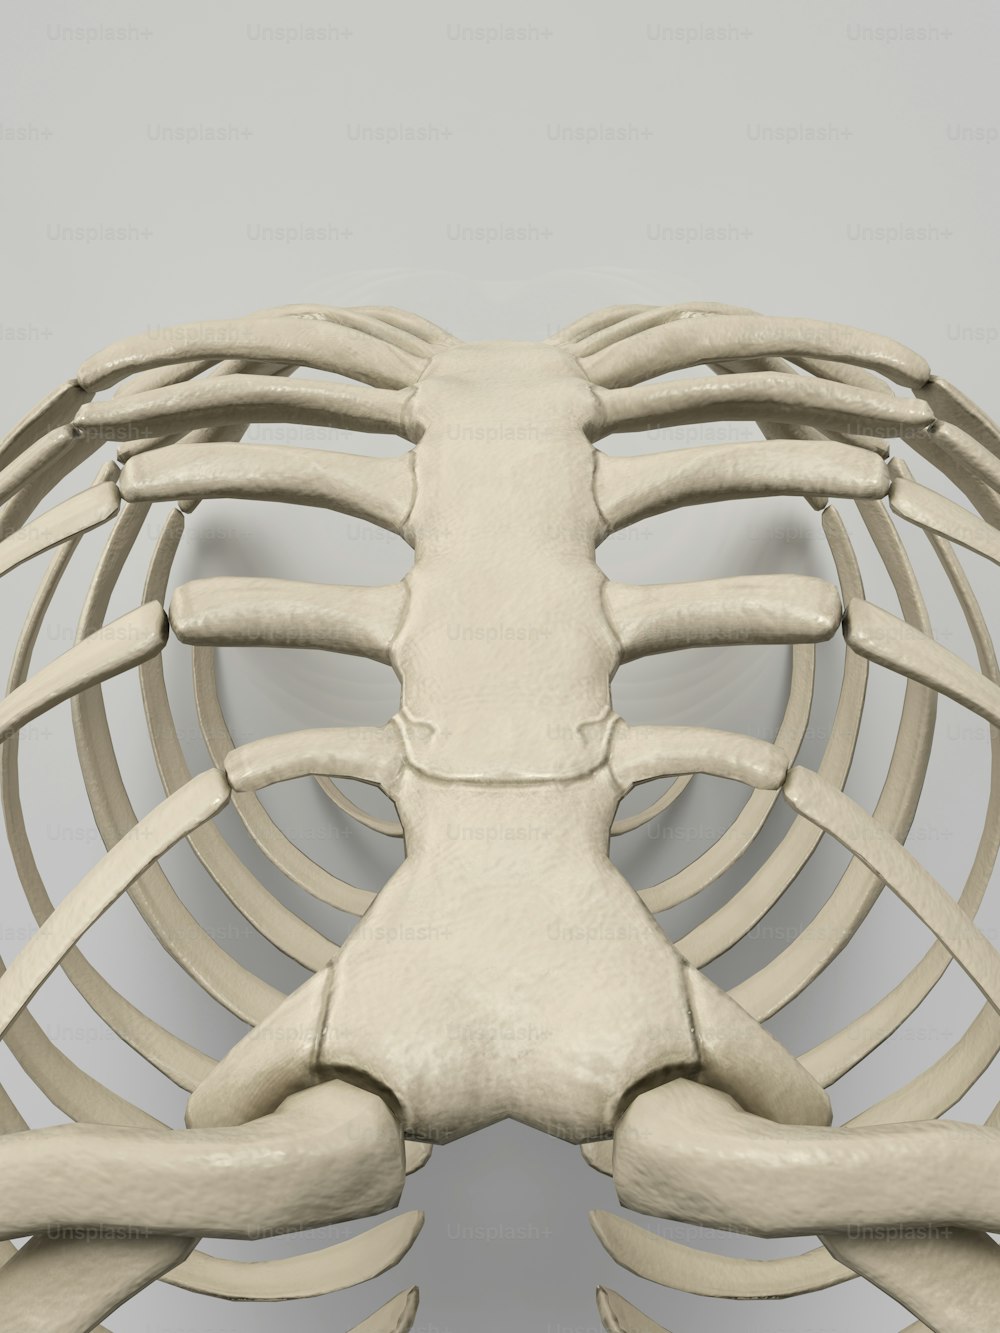 Un modèle du dos d’un squelette humain